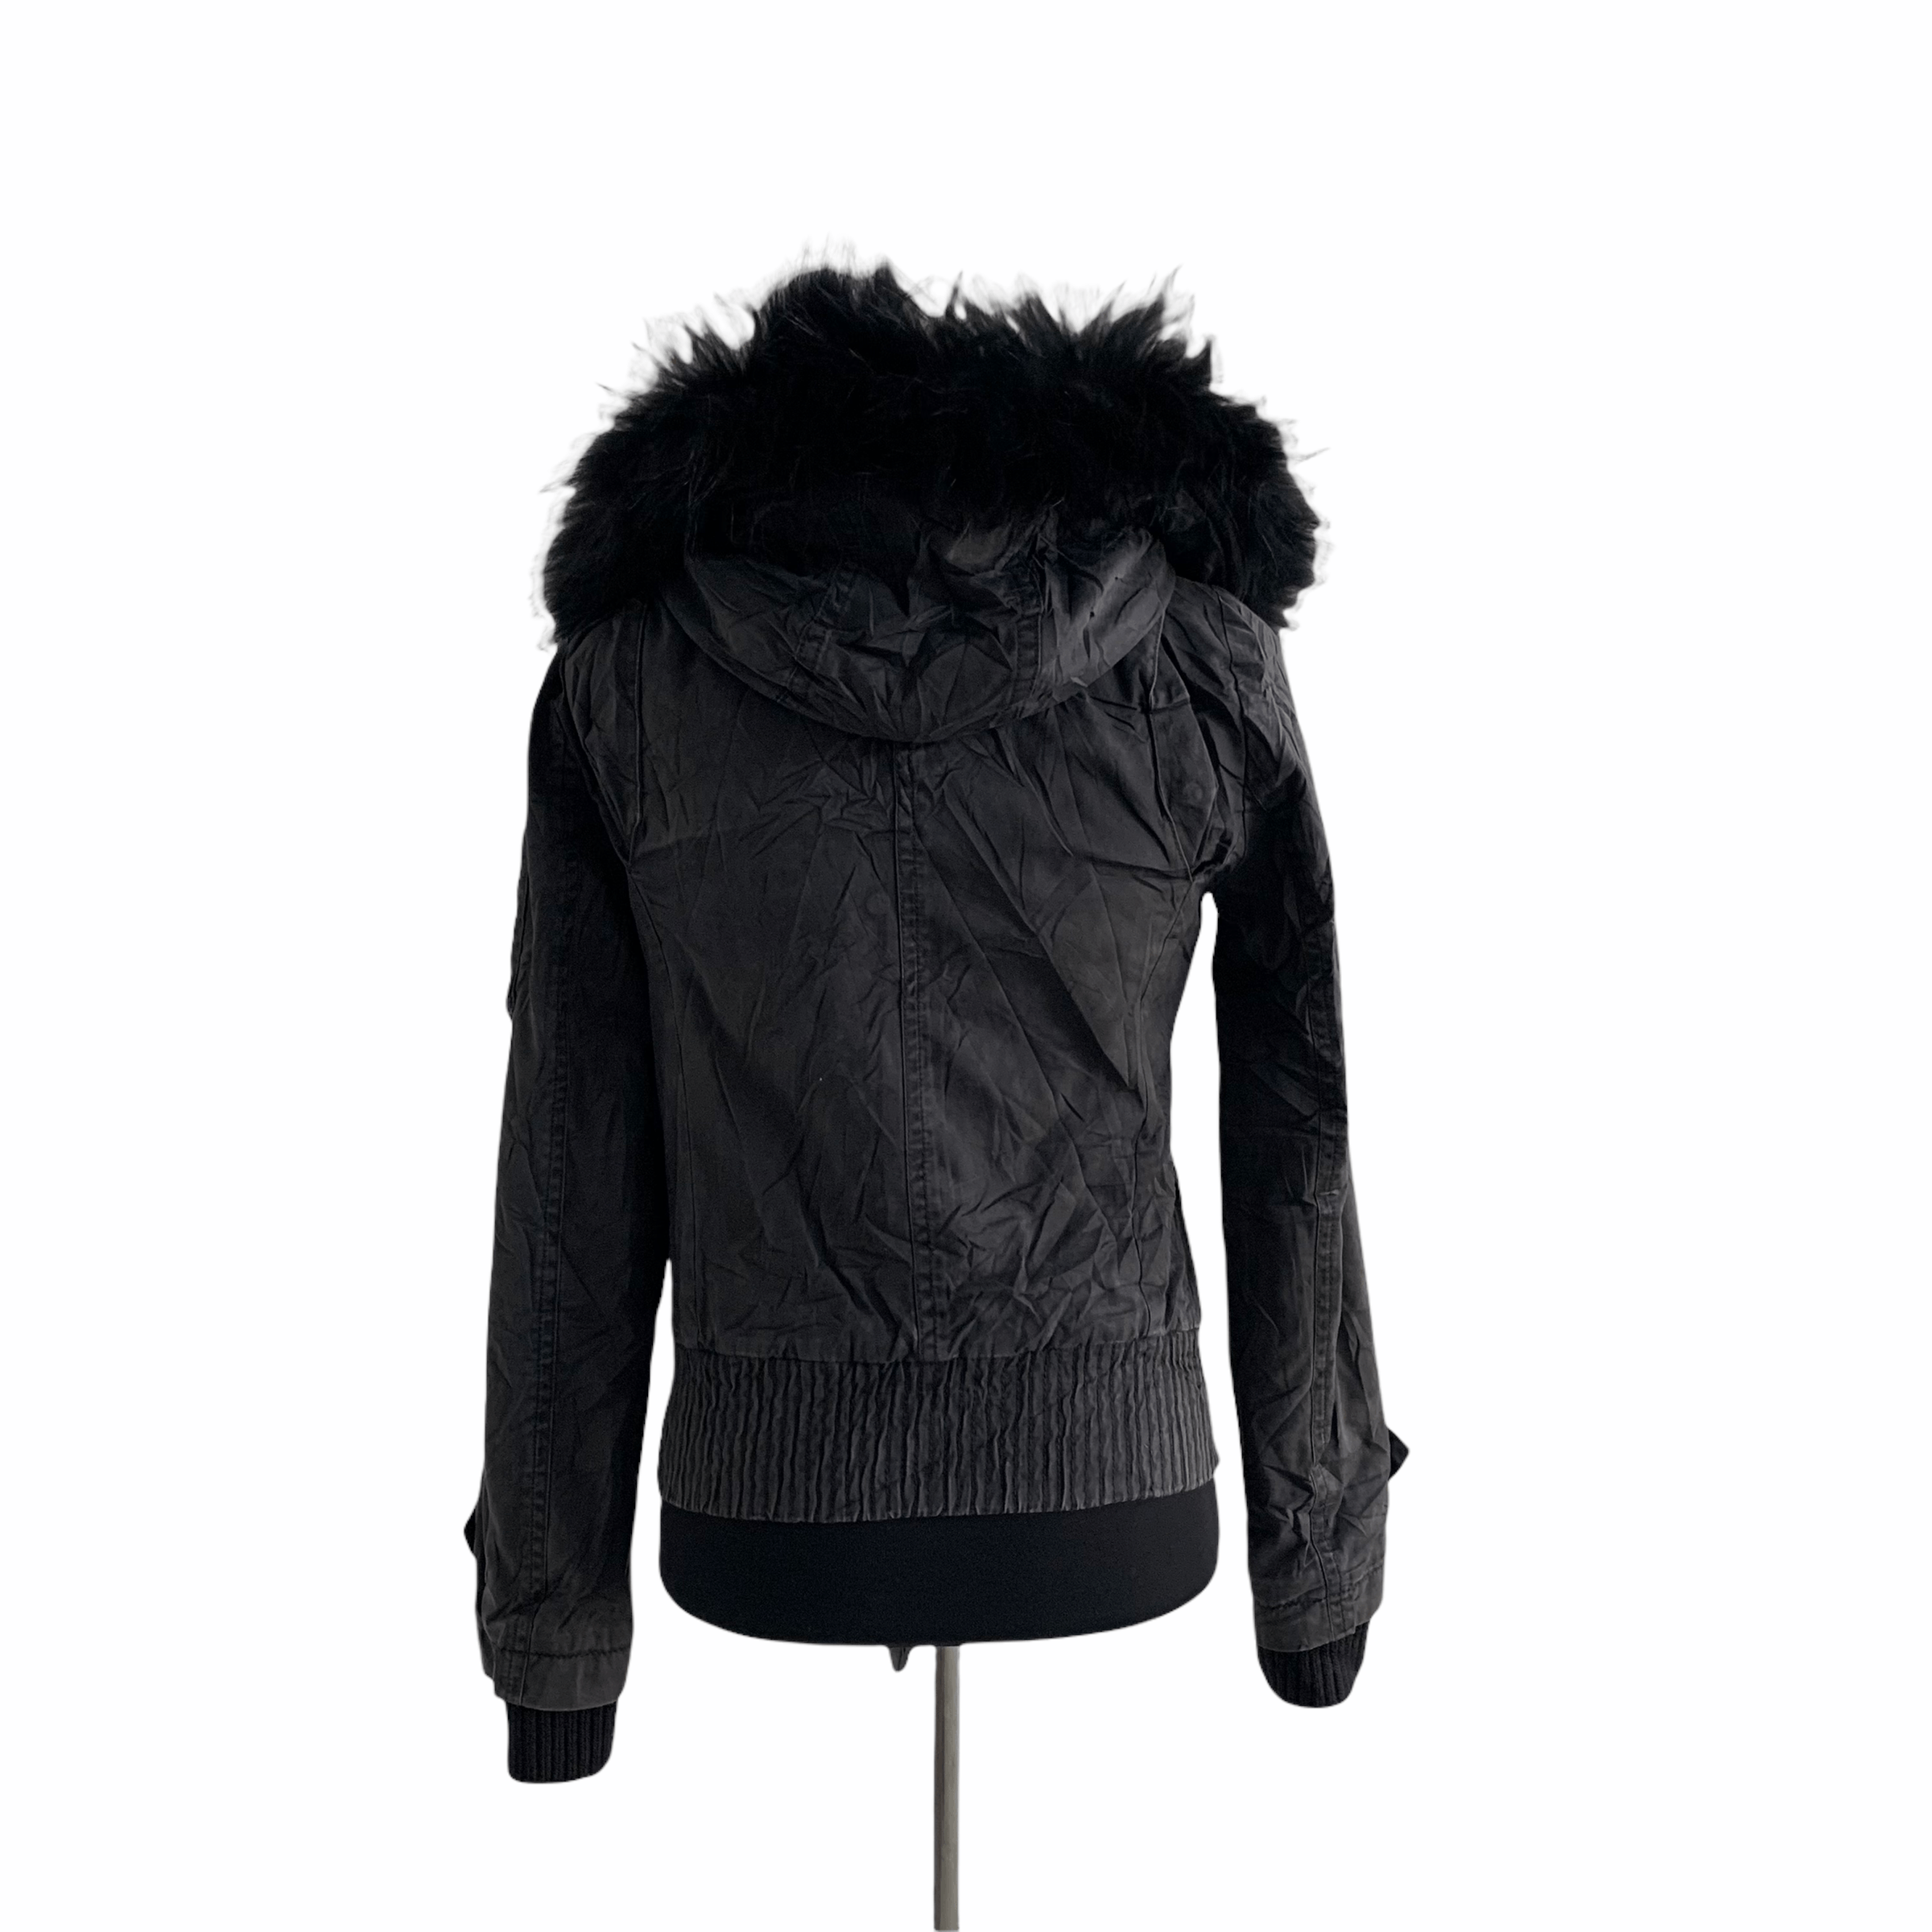 Burberry Blue Label Fur Hoodie Crop Jacket #3298-42 - 11